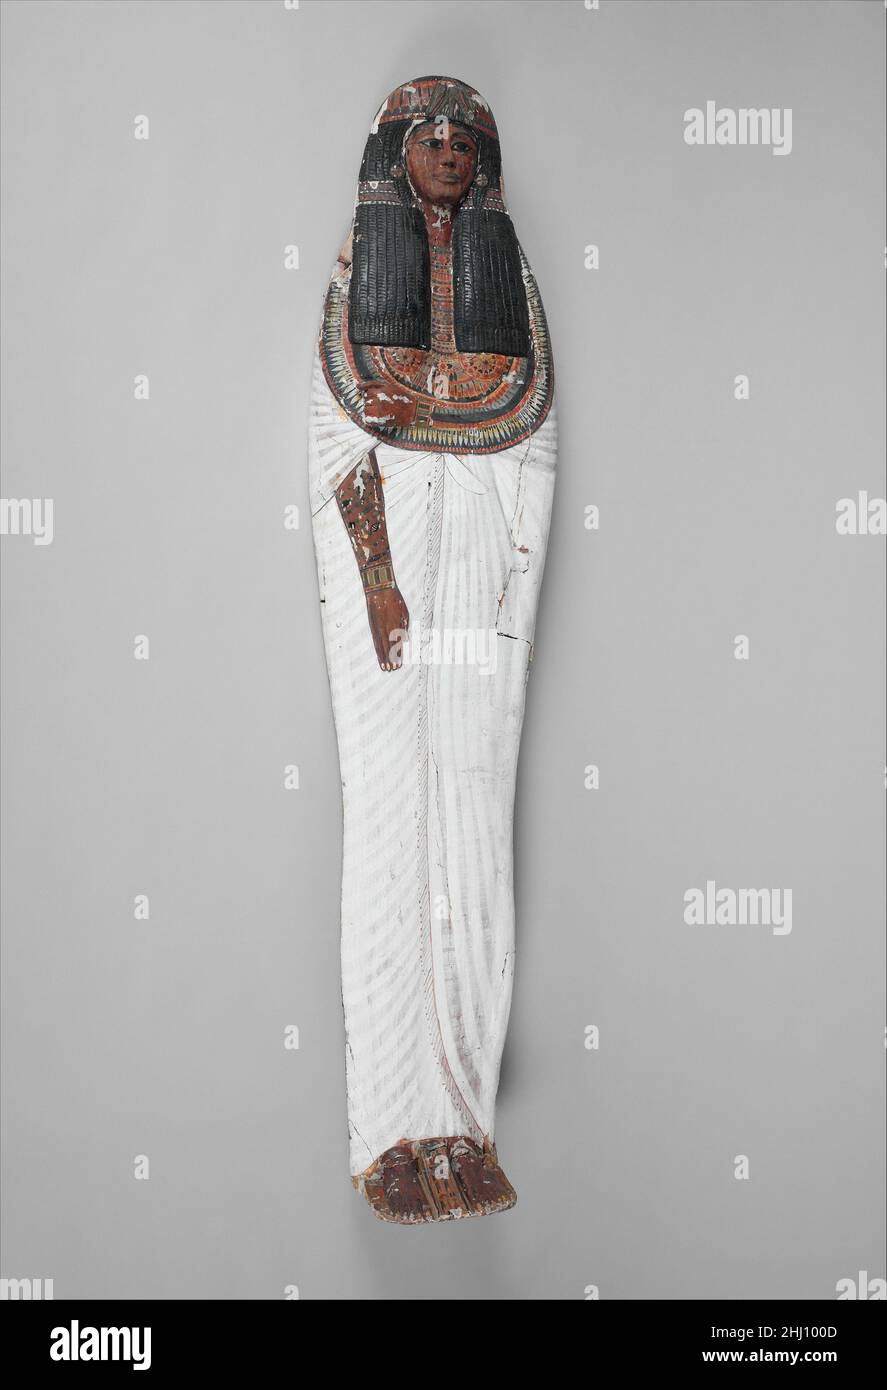 Mumie Board of Iineferty ca. 1279–1213 v. Chr. Neues Königreich, Ramesside die Herrin des Hauses, Iineferty, wurde in einem anthropoiden Holzsarg begraben (86,1.5a, b). Über den Körper wurde eine Holzabdeckung gelegt, die manchmal als „Mumienbrett“ bezeichnet wurde. Dieses Mumie-Brett ist geschnitzt und bemalt, um die Verstorbene darzustellen, als ob sie lebendig wäre und in einem langen weißen Faltenkleid gekleidet wäre. Weitere Objekte aus der Sammlung, die im selben Grab entdeckt wurden, können hier eingesehen werden. Hören Sie zu, wie Experten die Geschichte dieses Kunstwerks beleuchten Hörspiel oder Pause #3490. Sarg der Herrin des Hauses, Iineferty, unterstützt von Bloombe Stockfoto